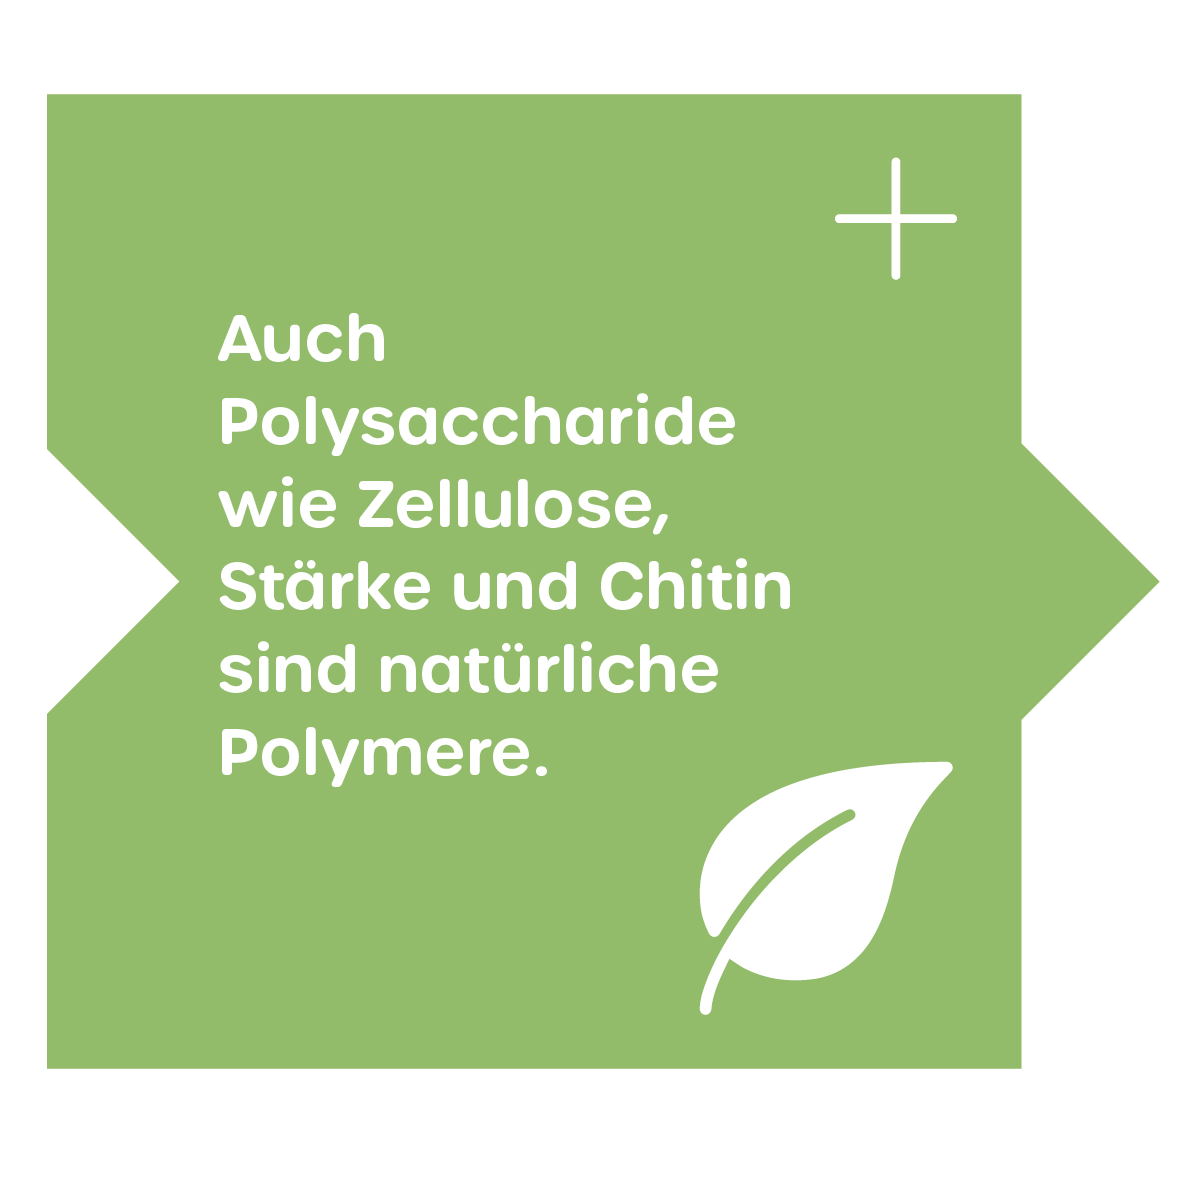 Natürliche Polymere: Polysaccharide